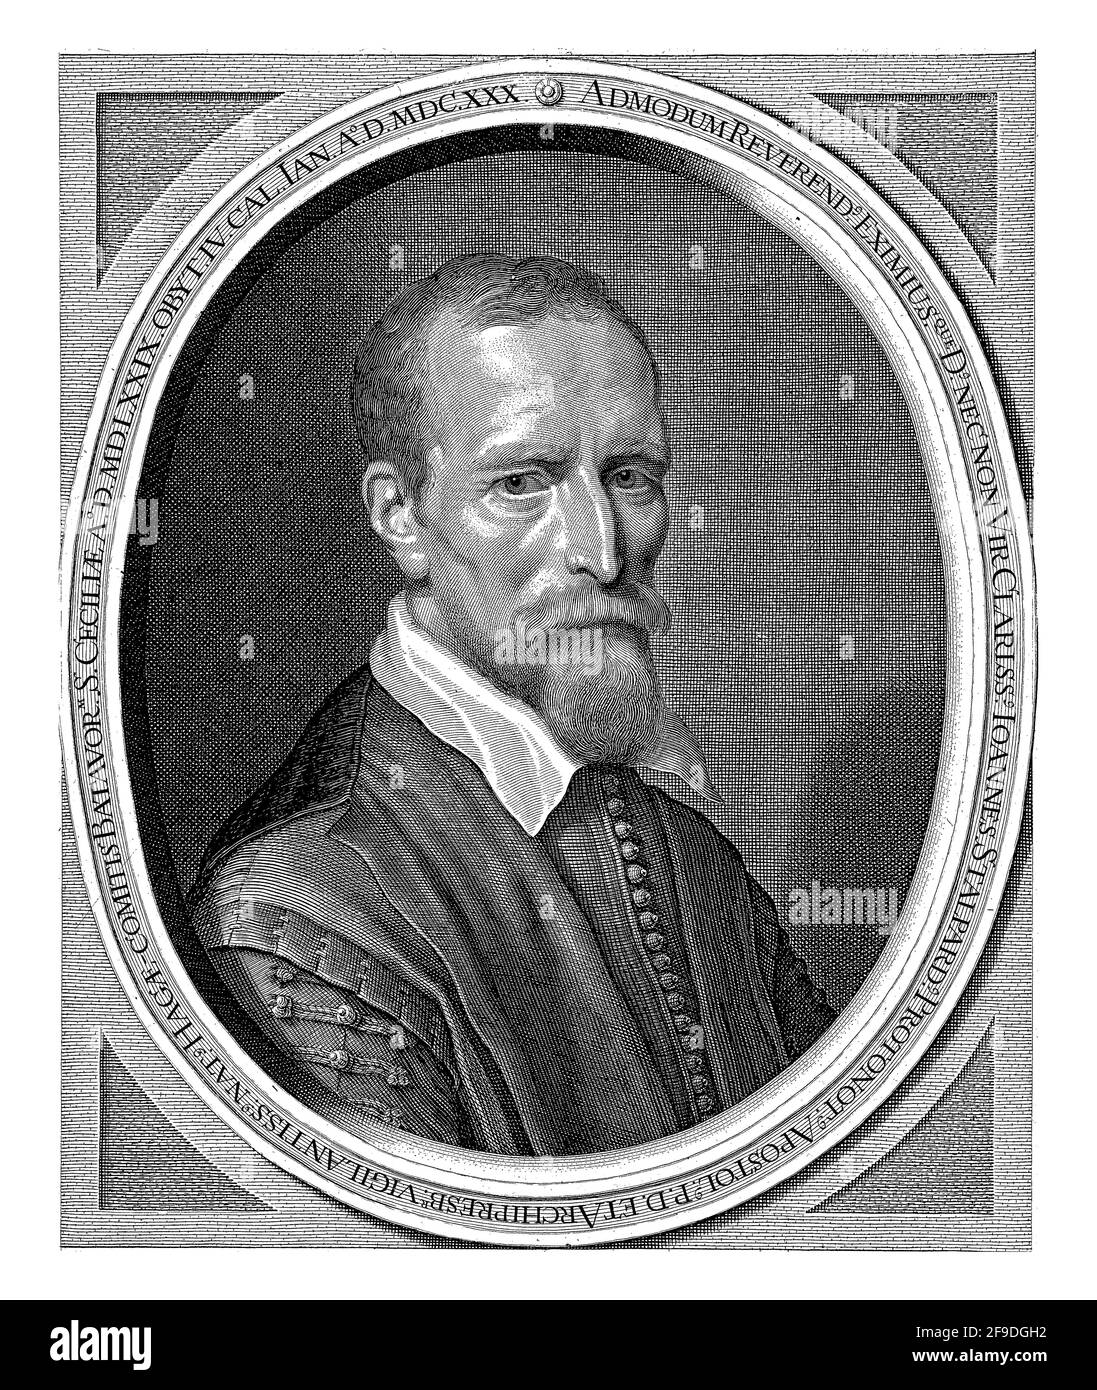 Portrait de Johannes Stalpaert van der Wiele, buste en vêtements sobres dans un cadre ovale avec inscription latine. Dans la marge inférieure verset néerlandais en deux sta Banque D'Images